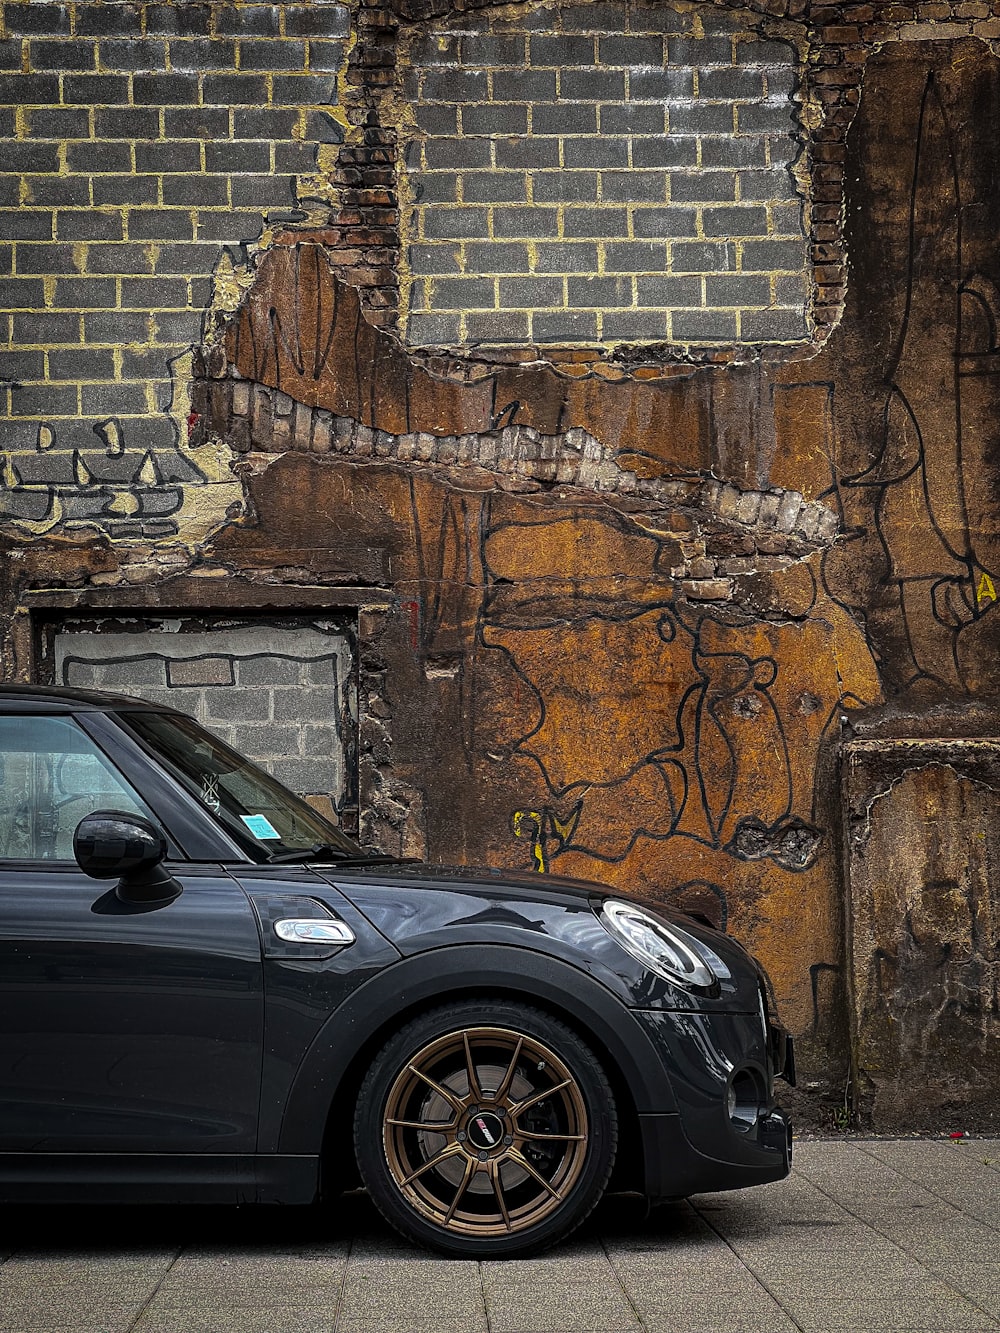 Un coche aparcado frente a una pared de ladrillos con graffiti